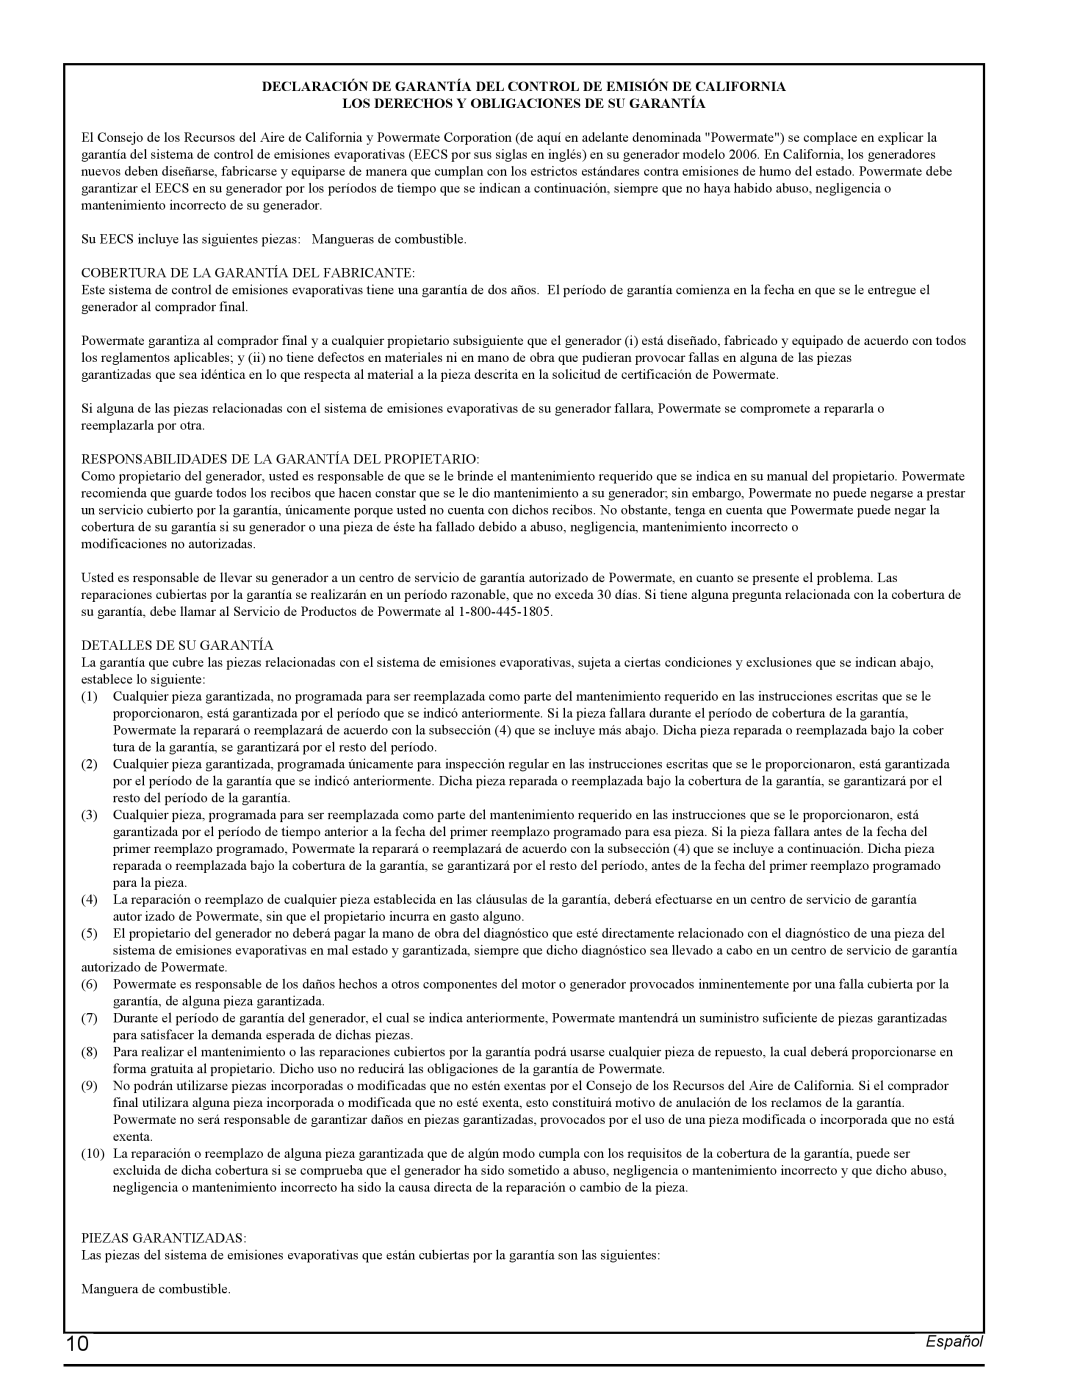 Powermate PMC435001 manual Declaración De Garantía Del Control De Emisión De California, Español 